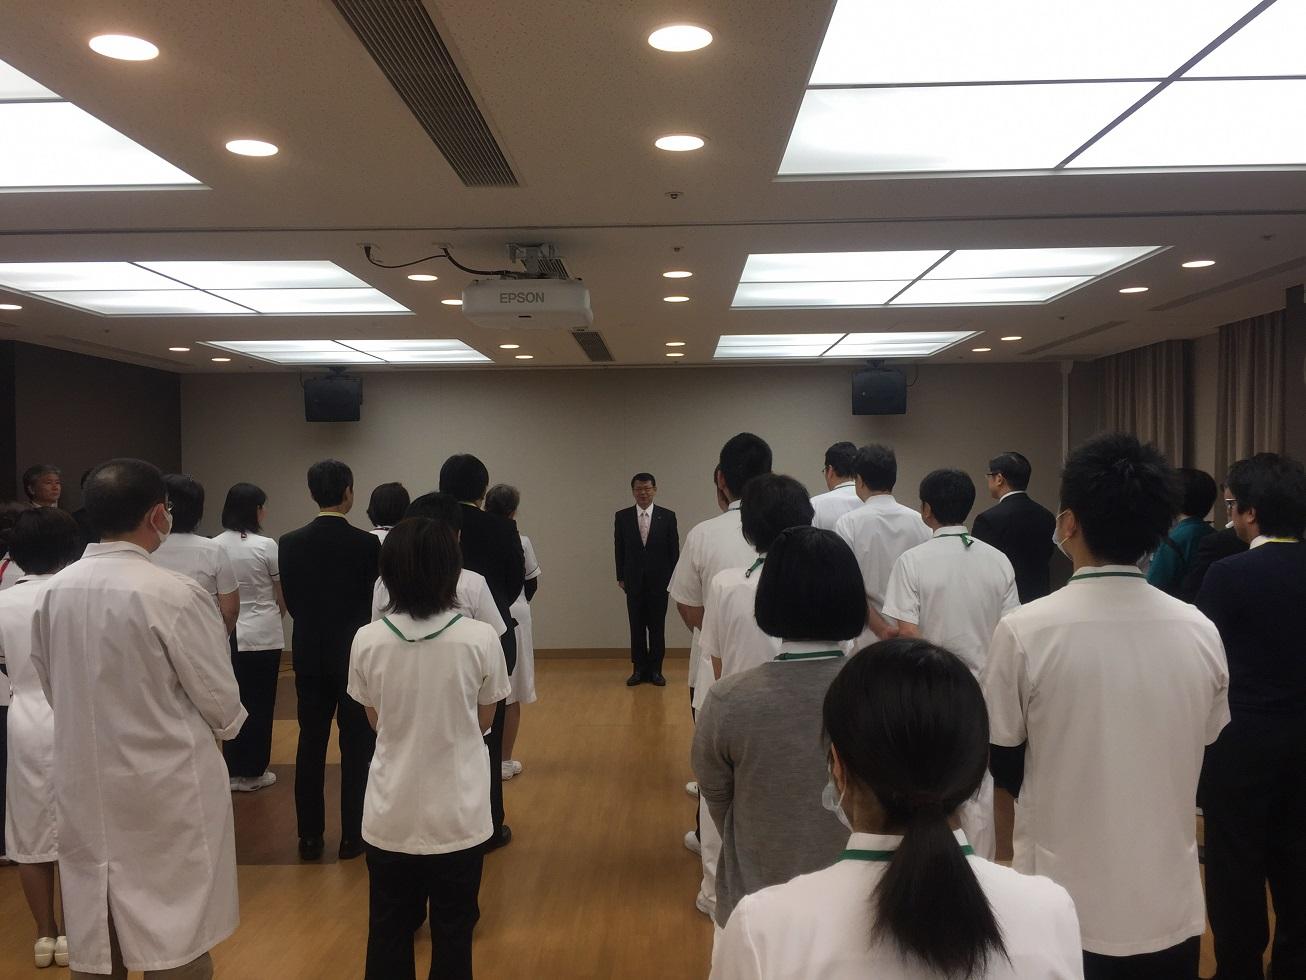 2019年1月4日整列する市民病院の職員に訓示を述べる市長の写真